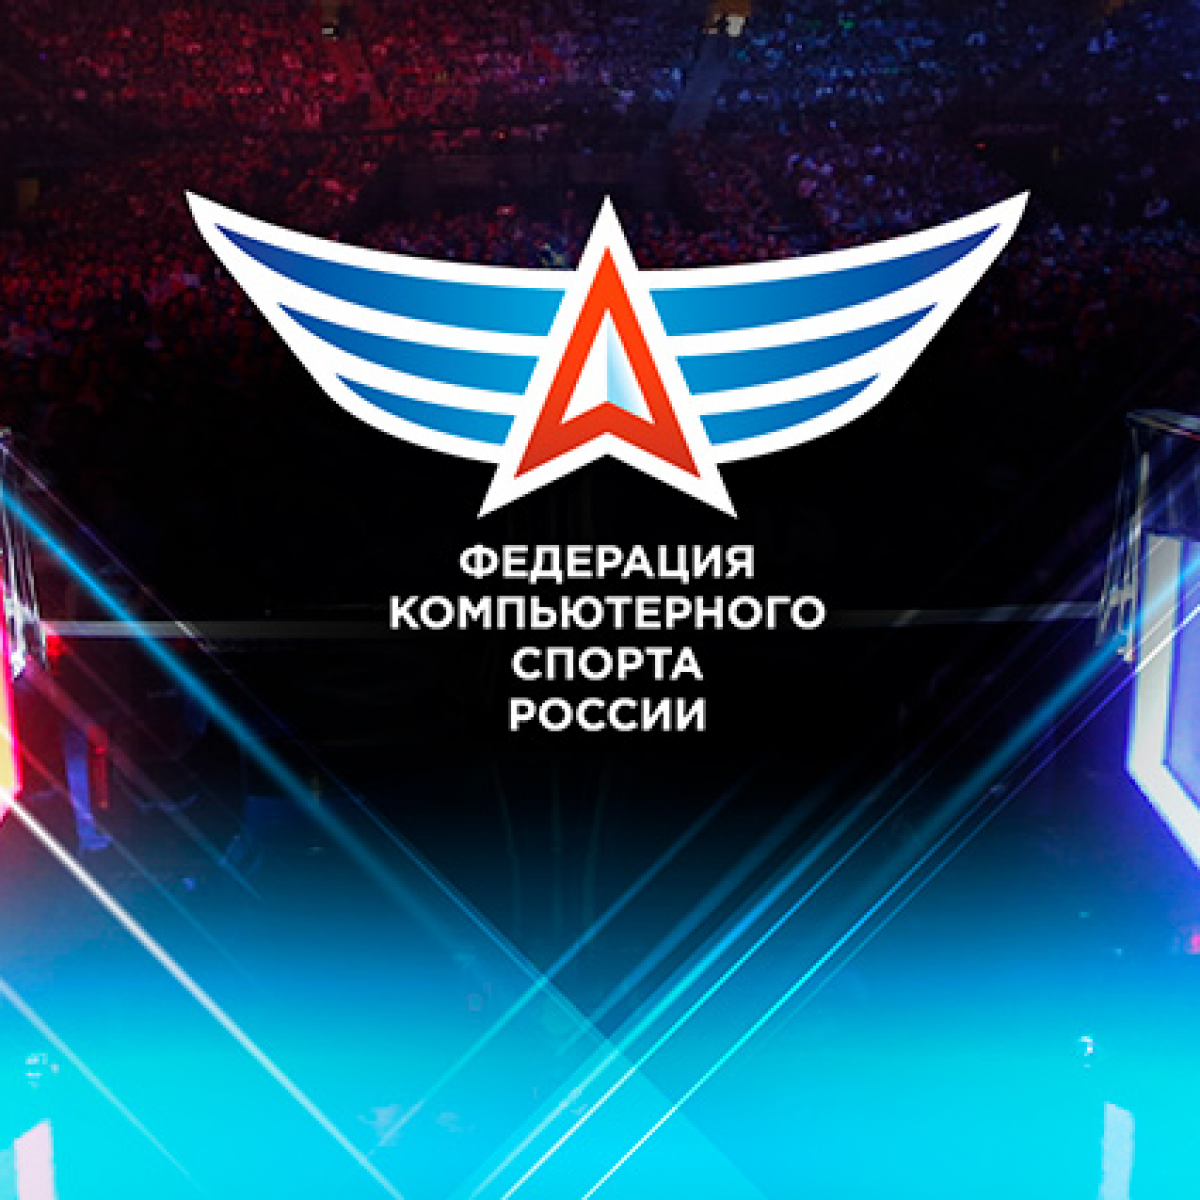 Призовой фонд чемпионата России по компьютерному спорту 2021 составил более 3,6 млн рублей